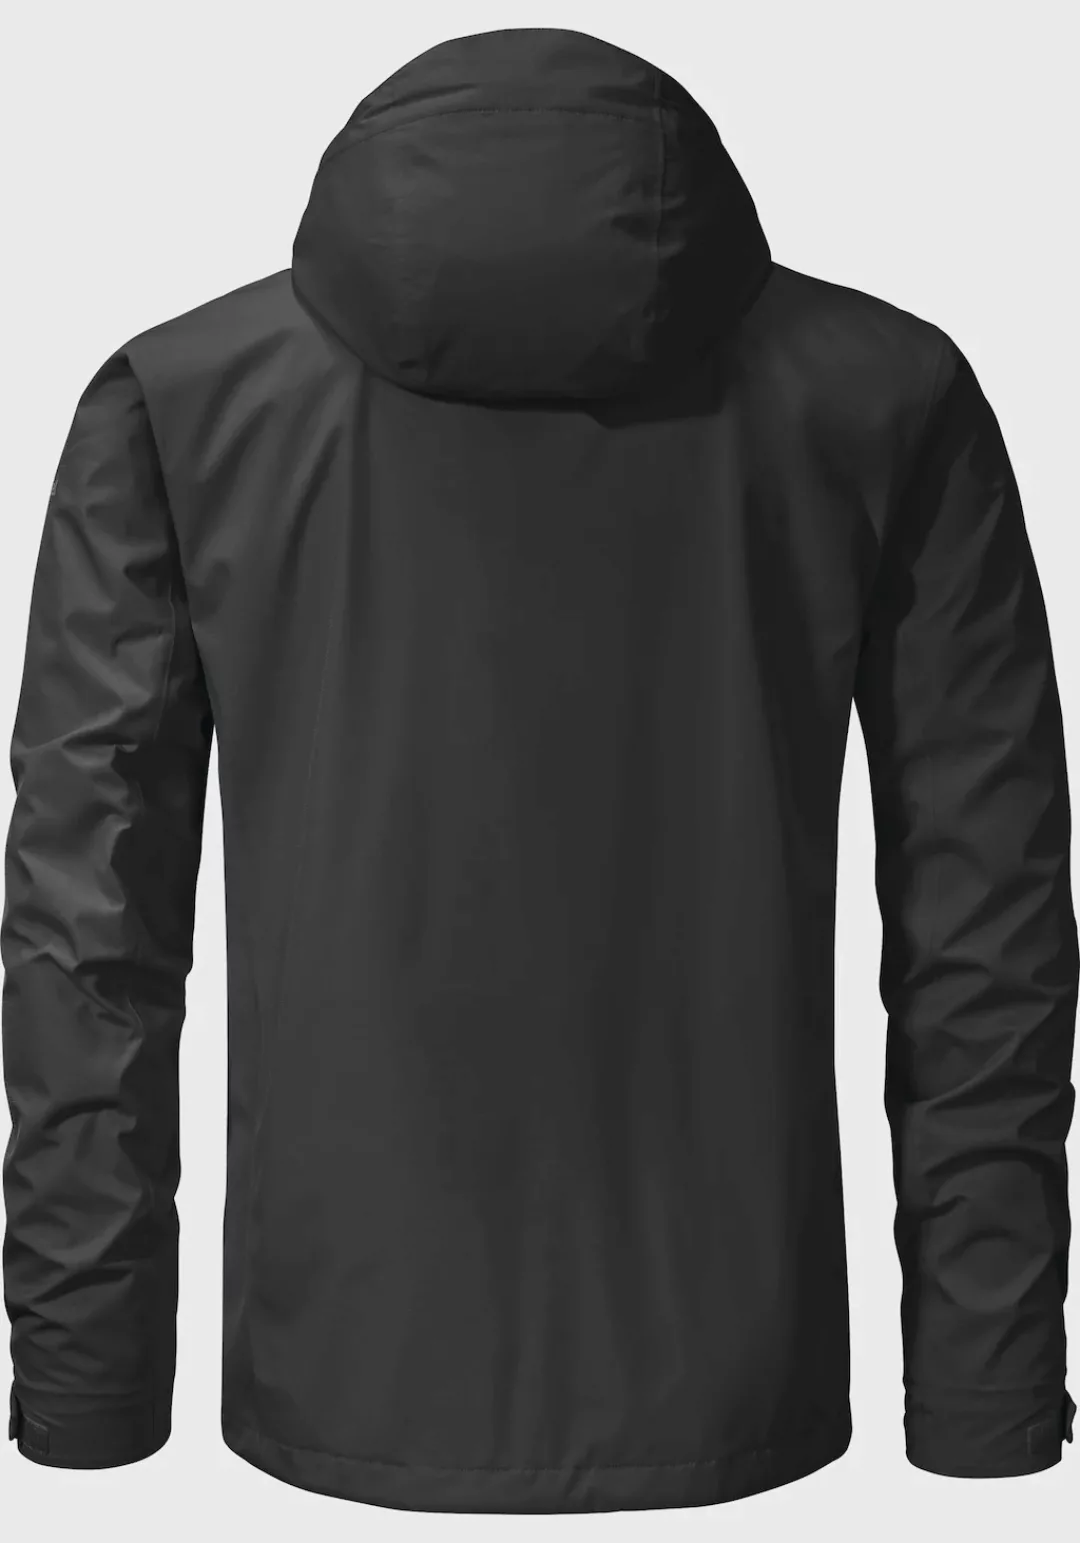 Schöffel Outdoorjacke "Jacket Gmund M", mit Kapuze günstig online kaufen